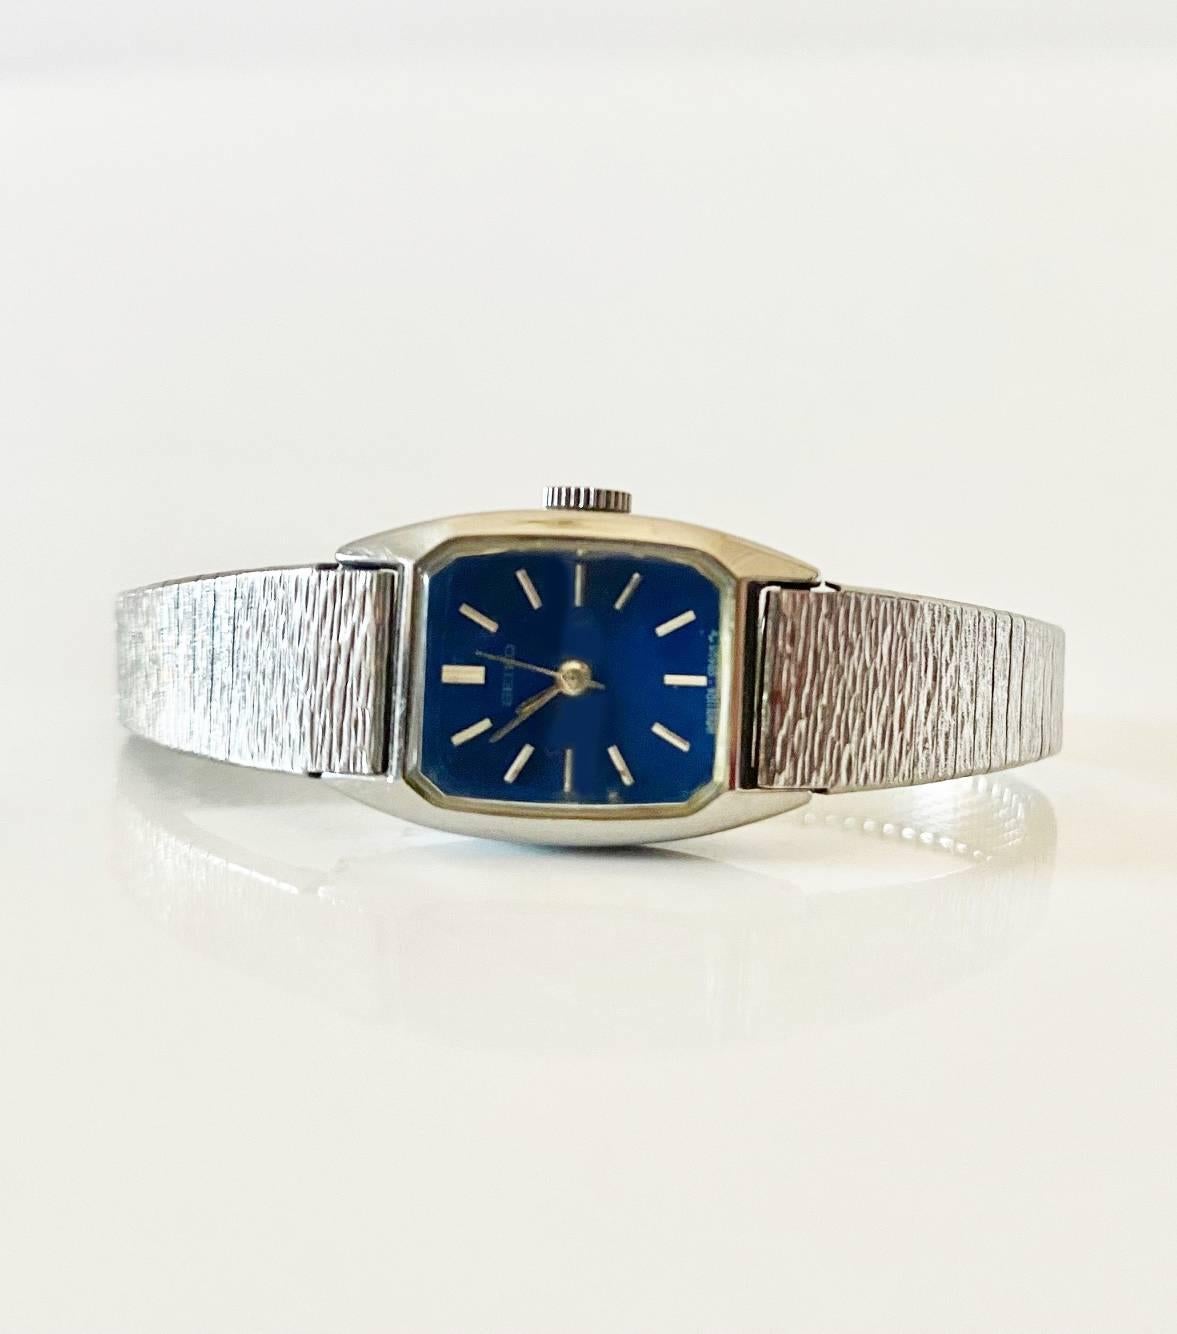 Diese elegante und kultige Seiko Jewell Edelstahluhr aus den 1970er Jahren mit blauem Zifferblatt verfügt über ein manuelles Uhrwerk, eine analoge Anzeige, ein 12-Stunden-Zifferblatt, Mineralglas und eine Krone mit Druck-/Zugmechanismus, alles mit